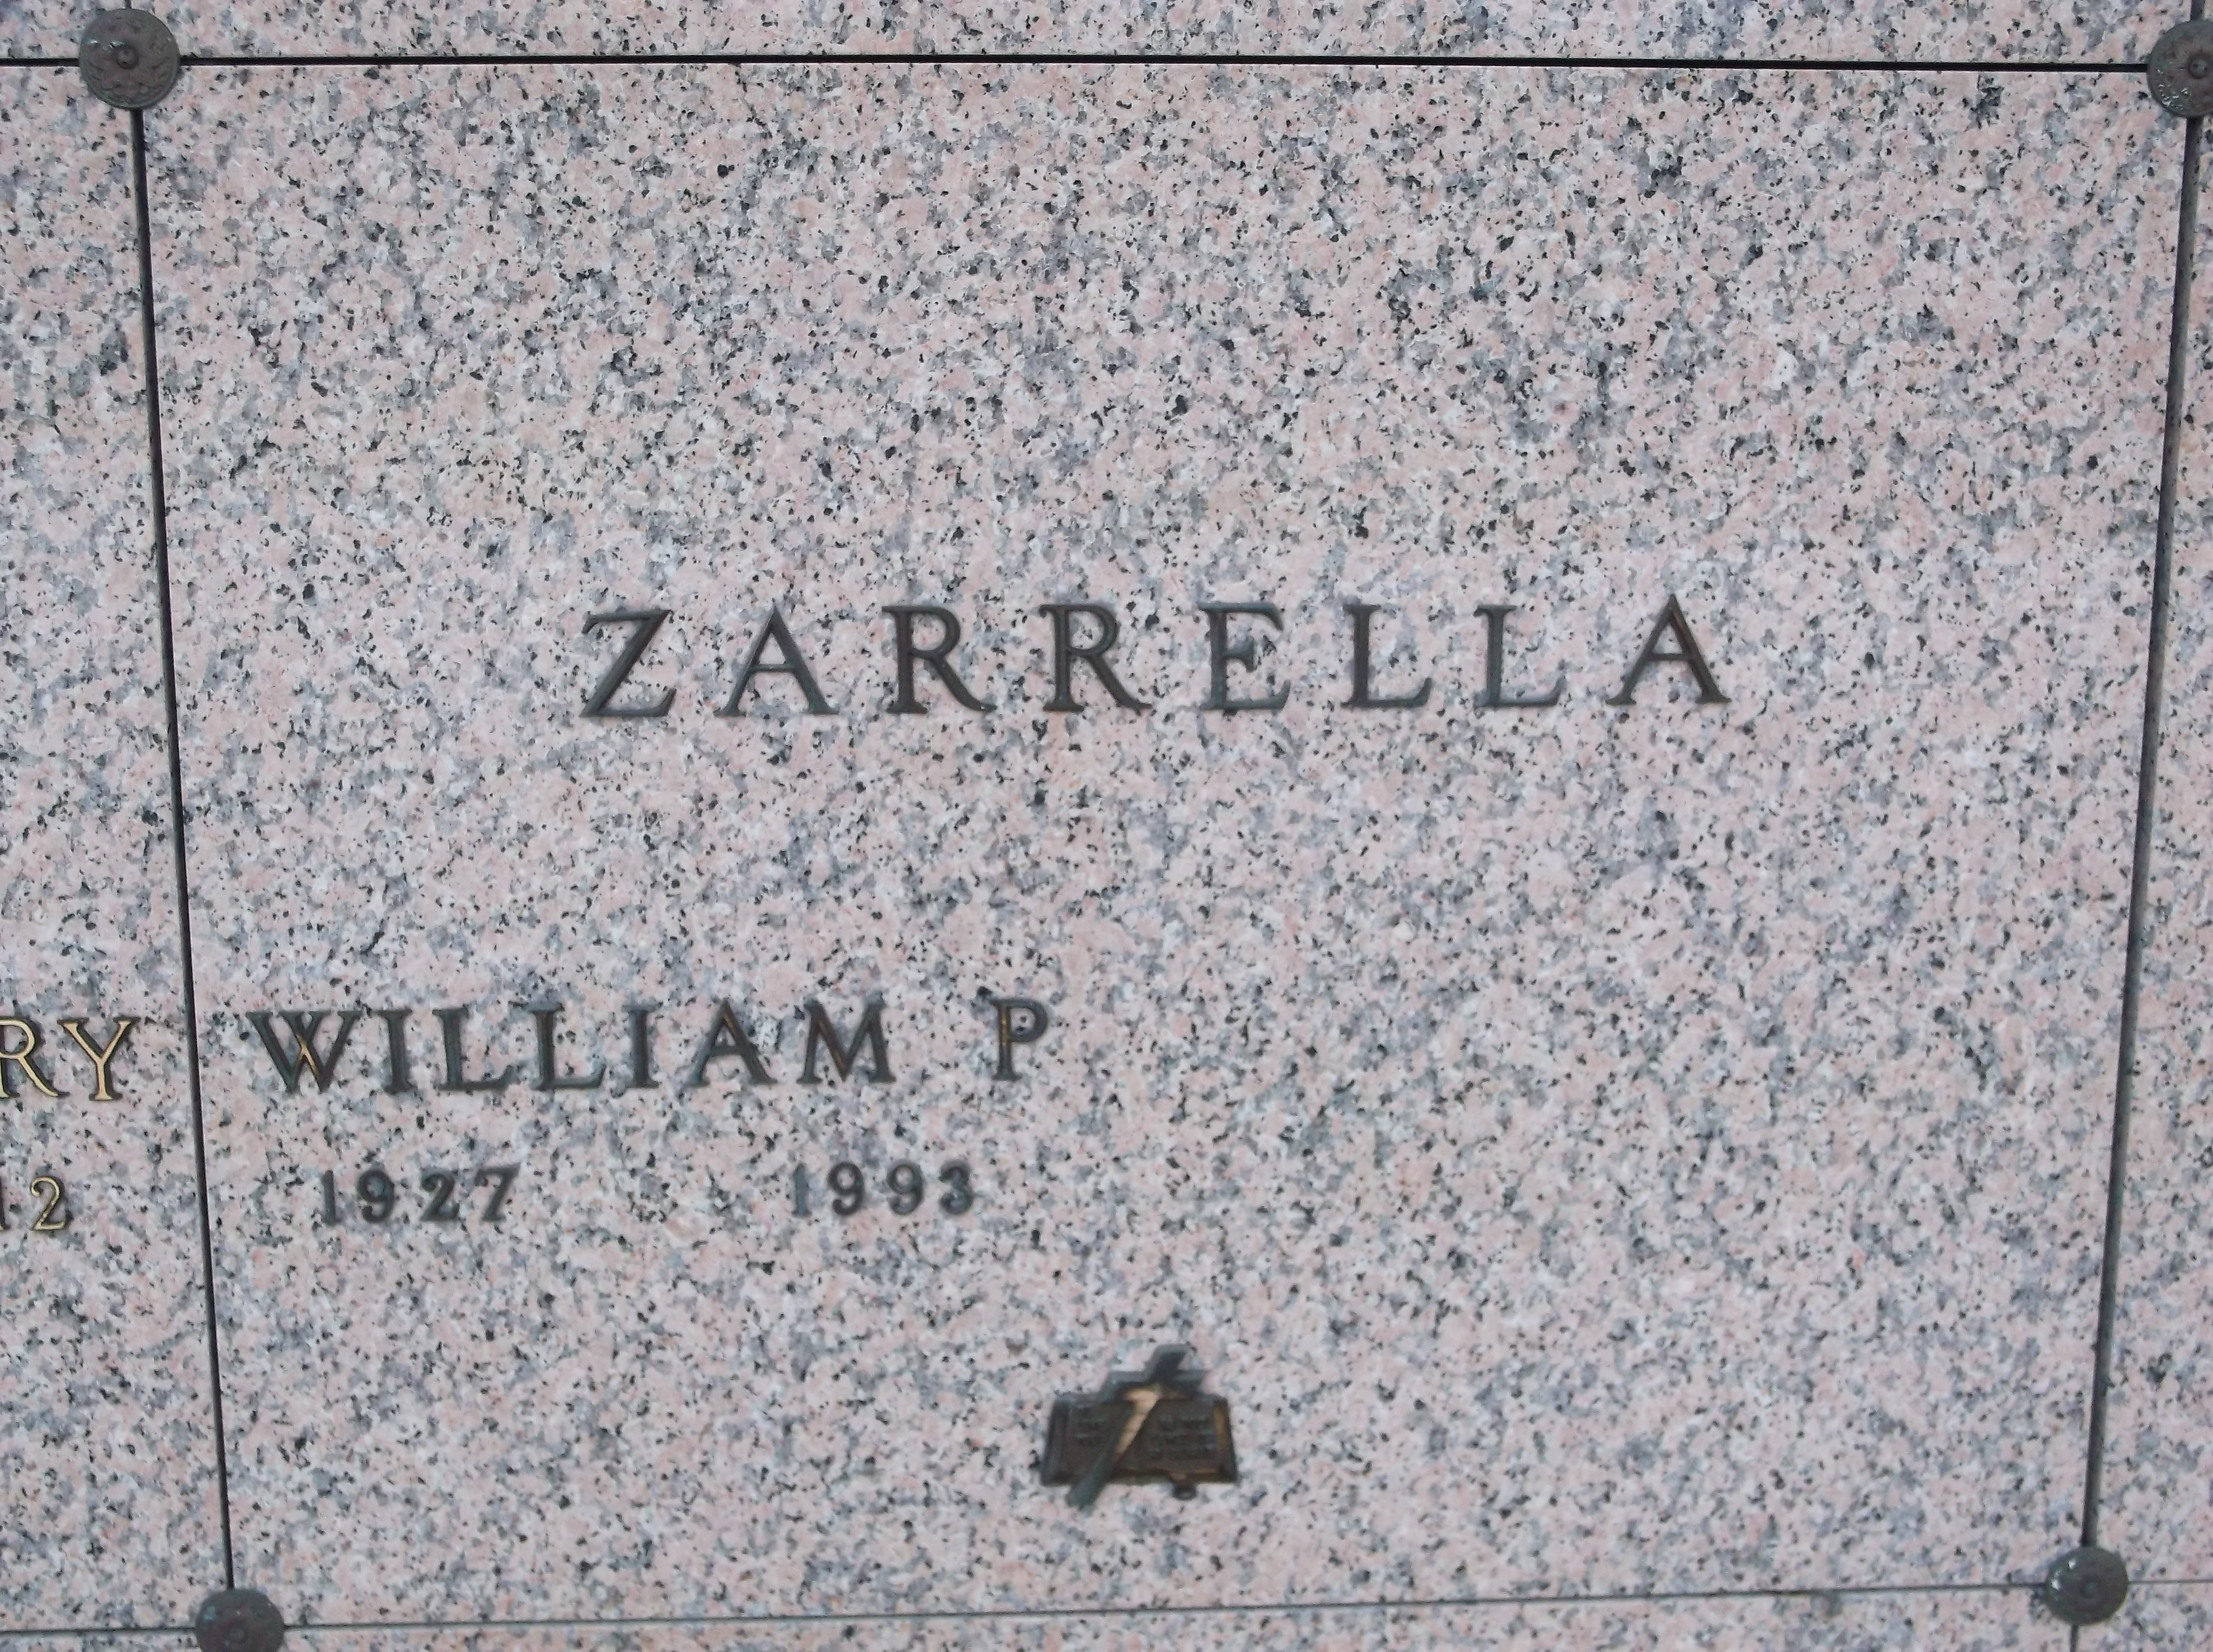 William P Zarrella